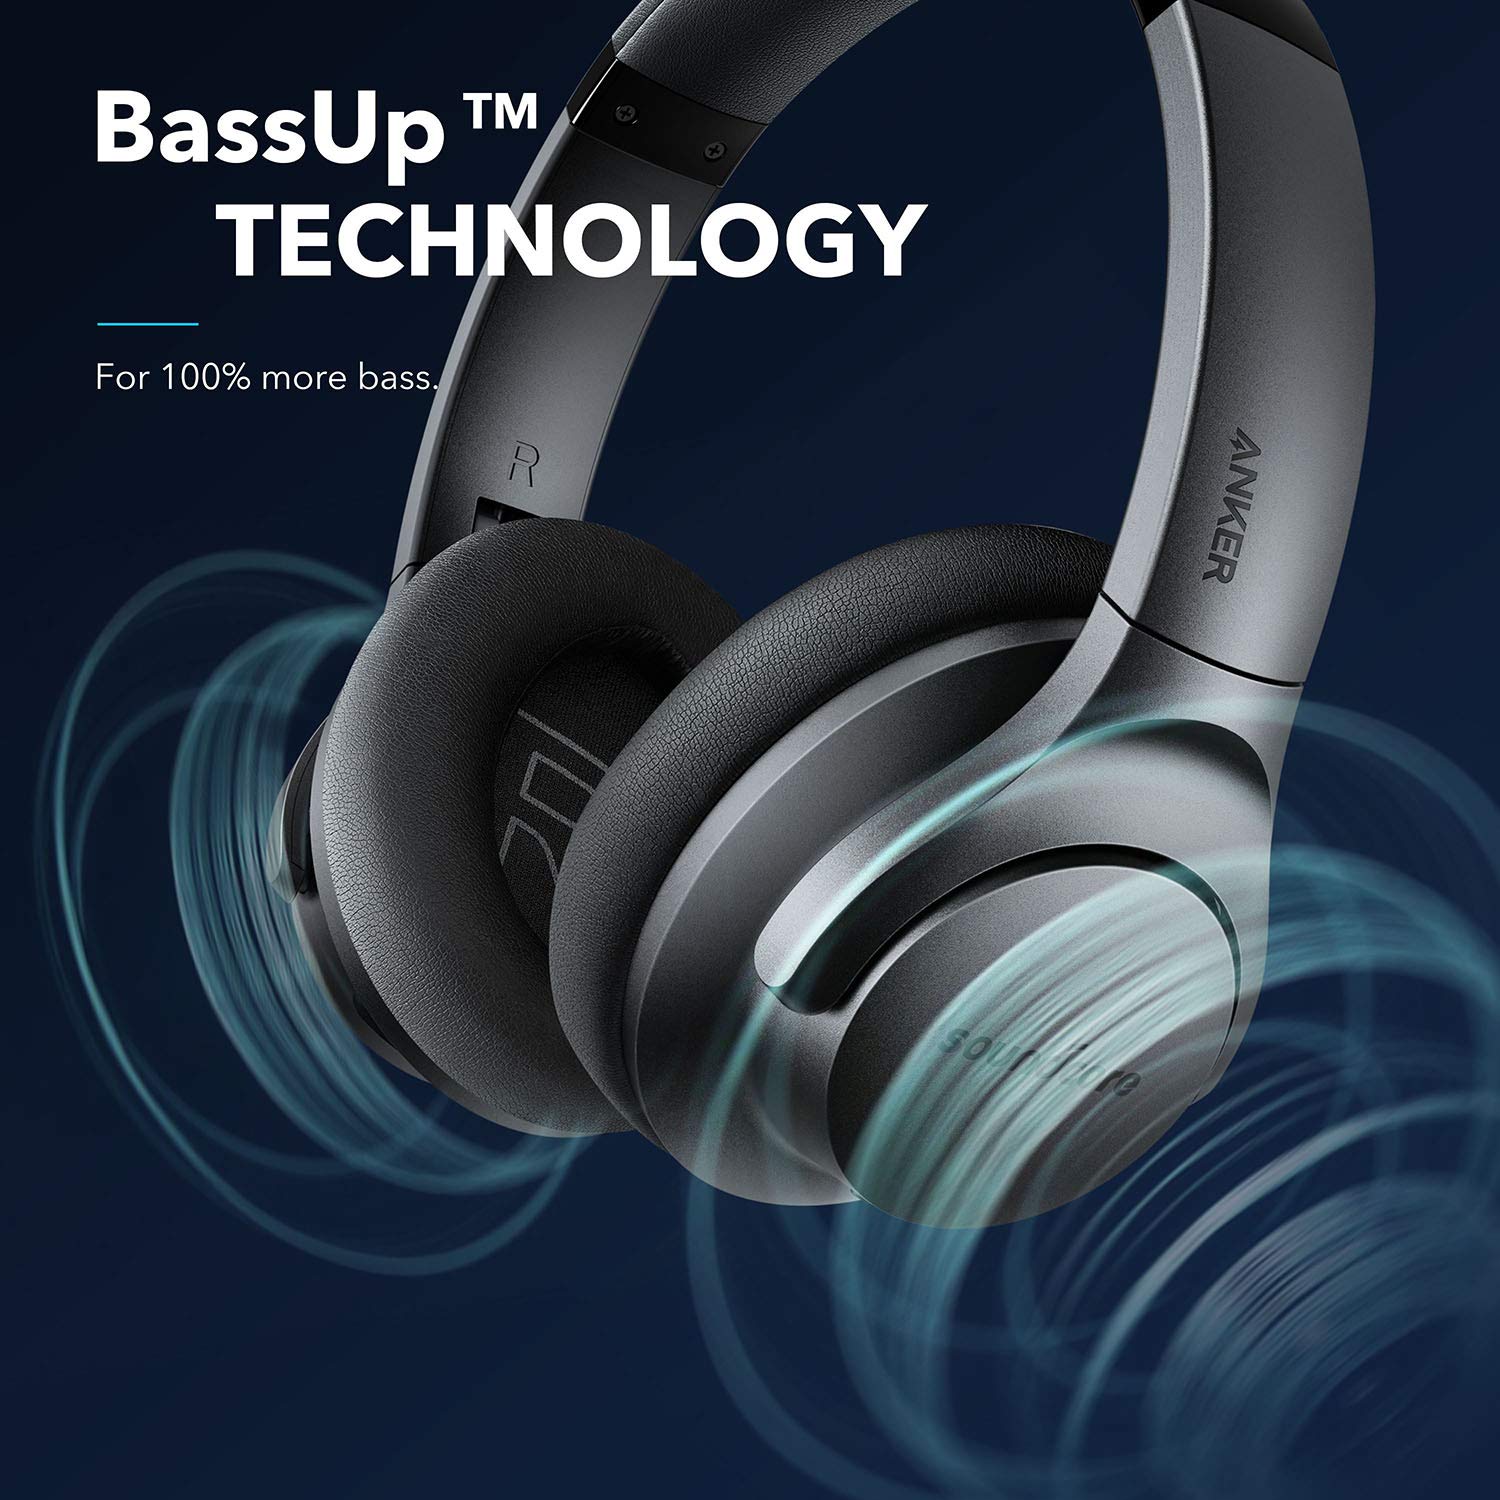 Für mehr Bass gibt es die sogenannte "BassUP"-Technologie, die optional aktiviert werden kann.